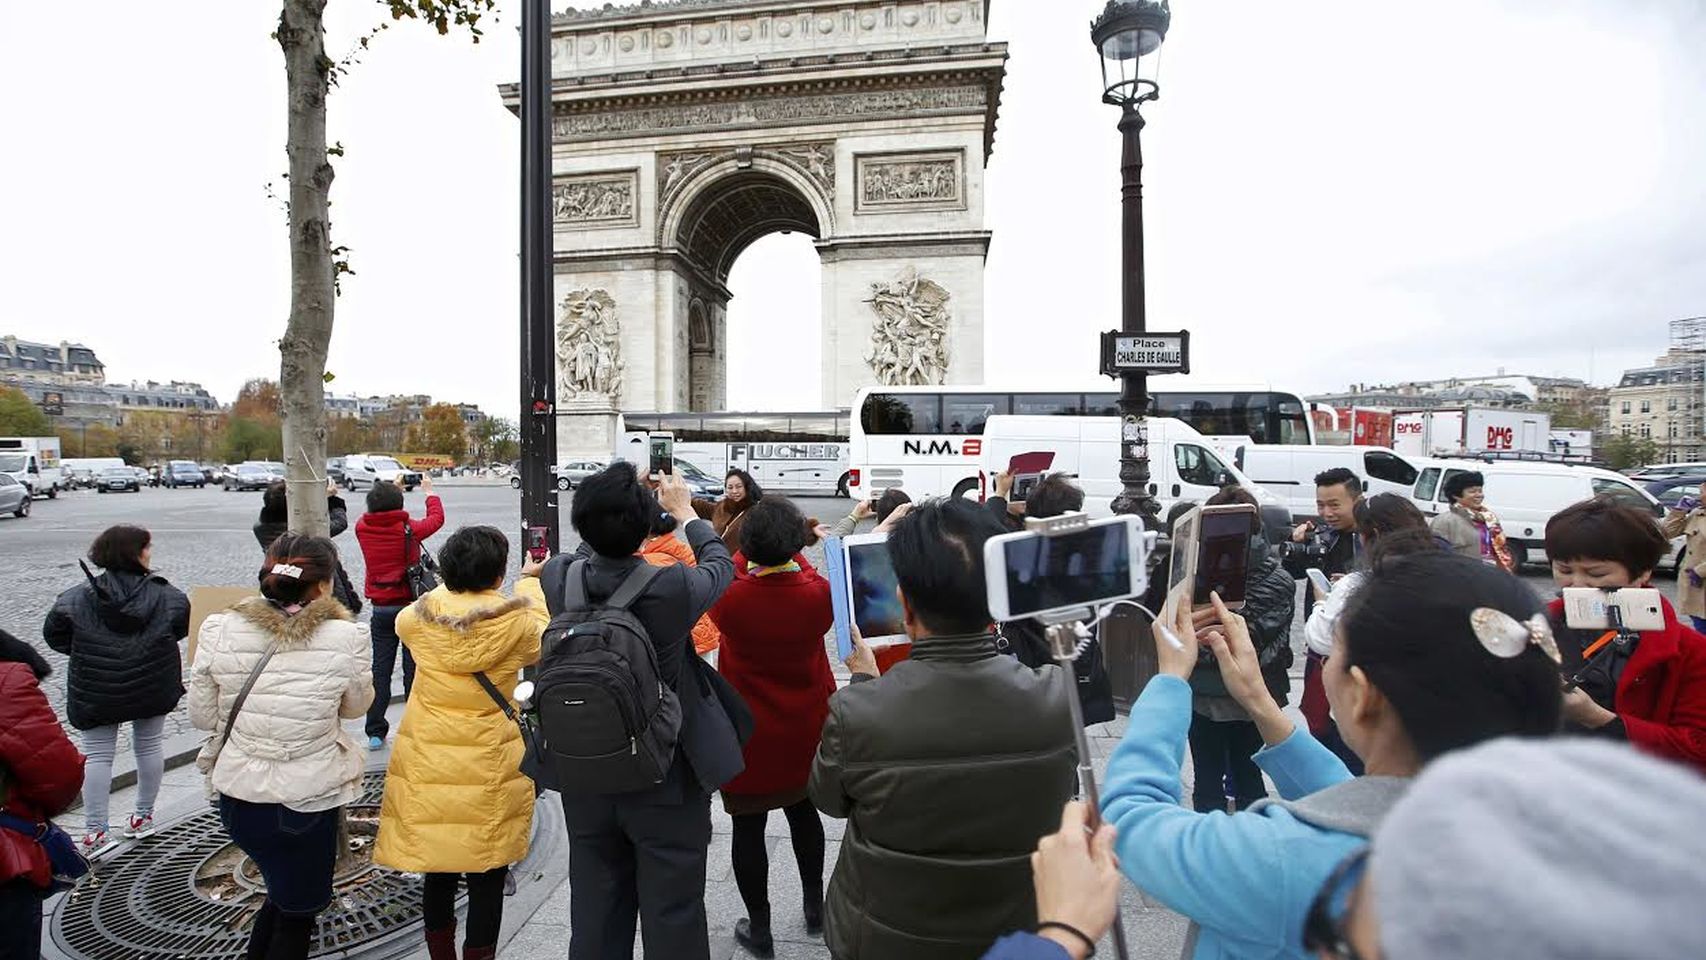 Desciende el turismo en París 